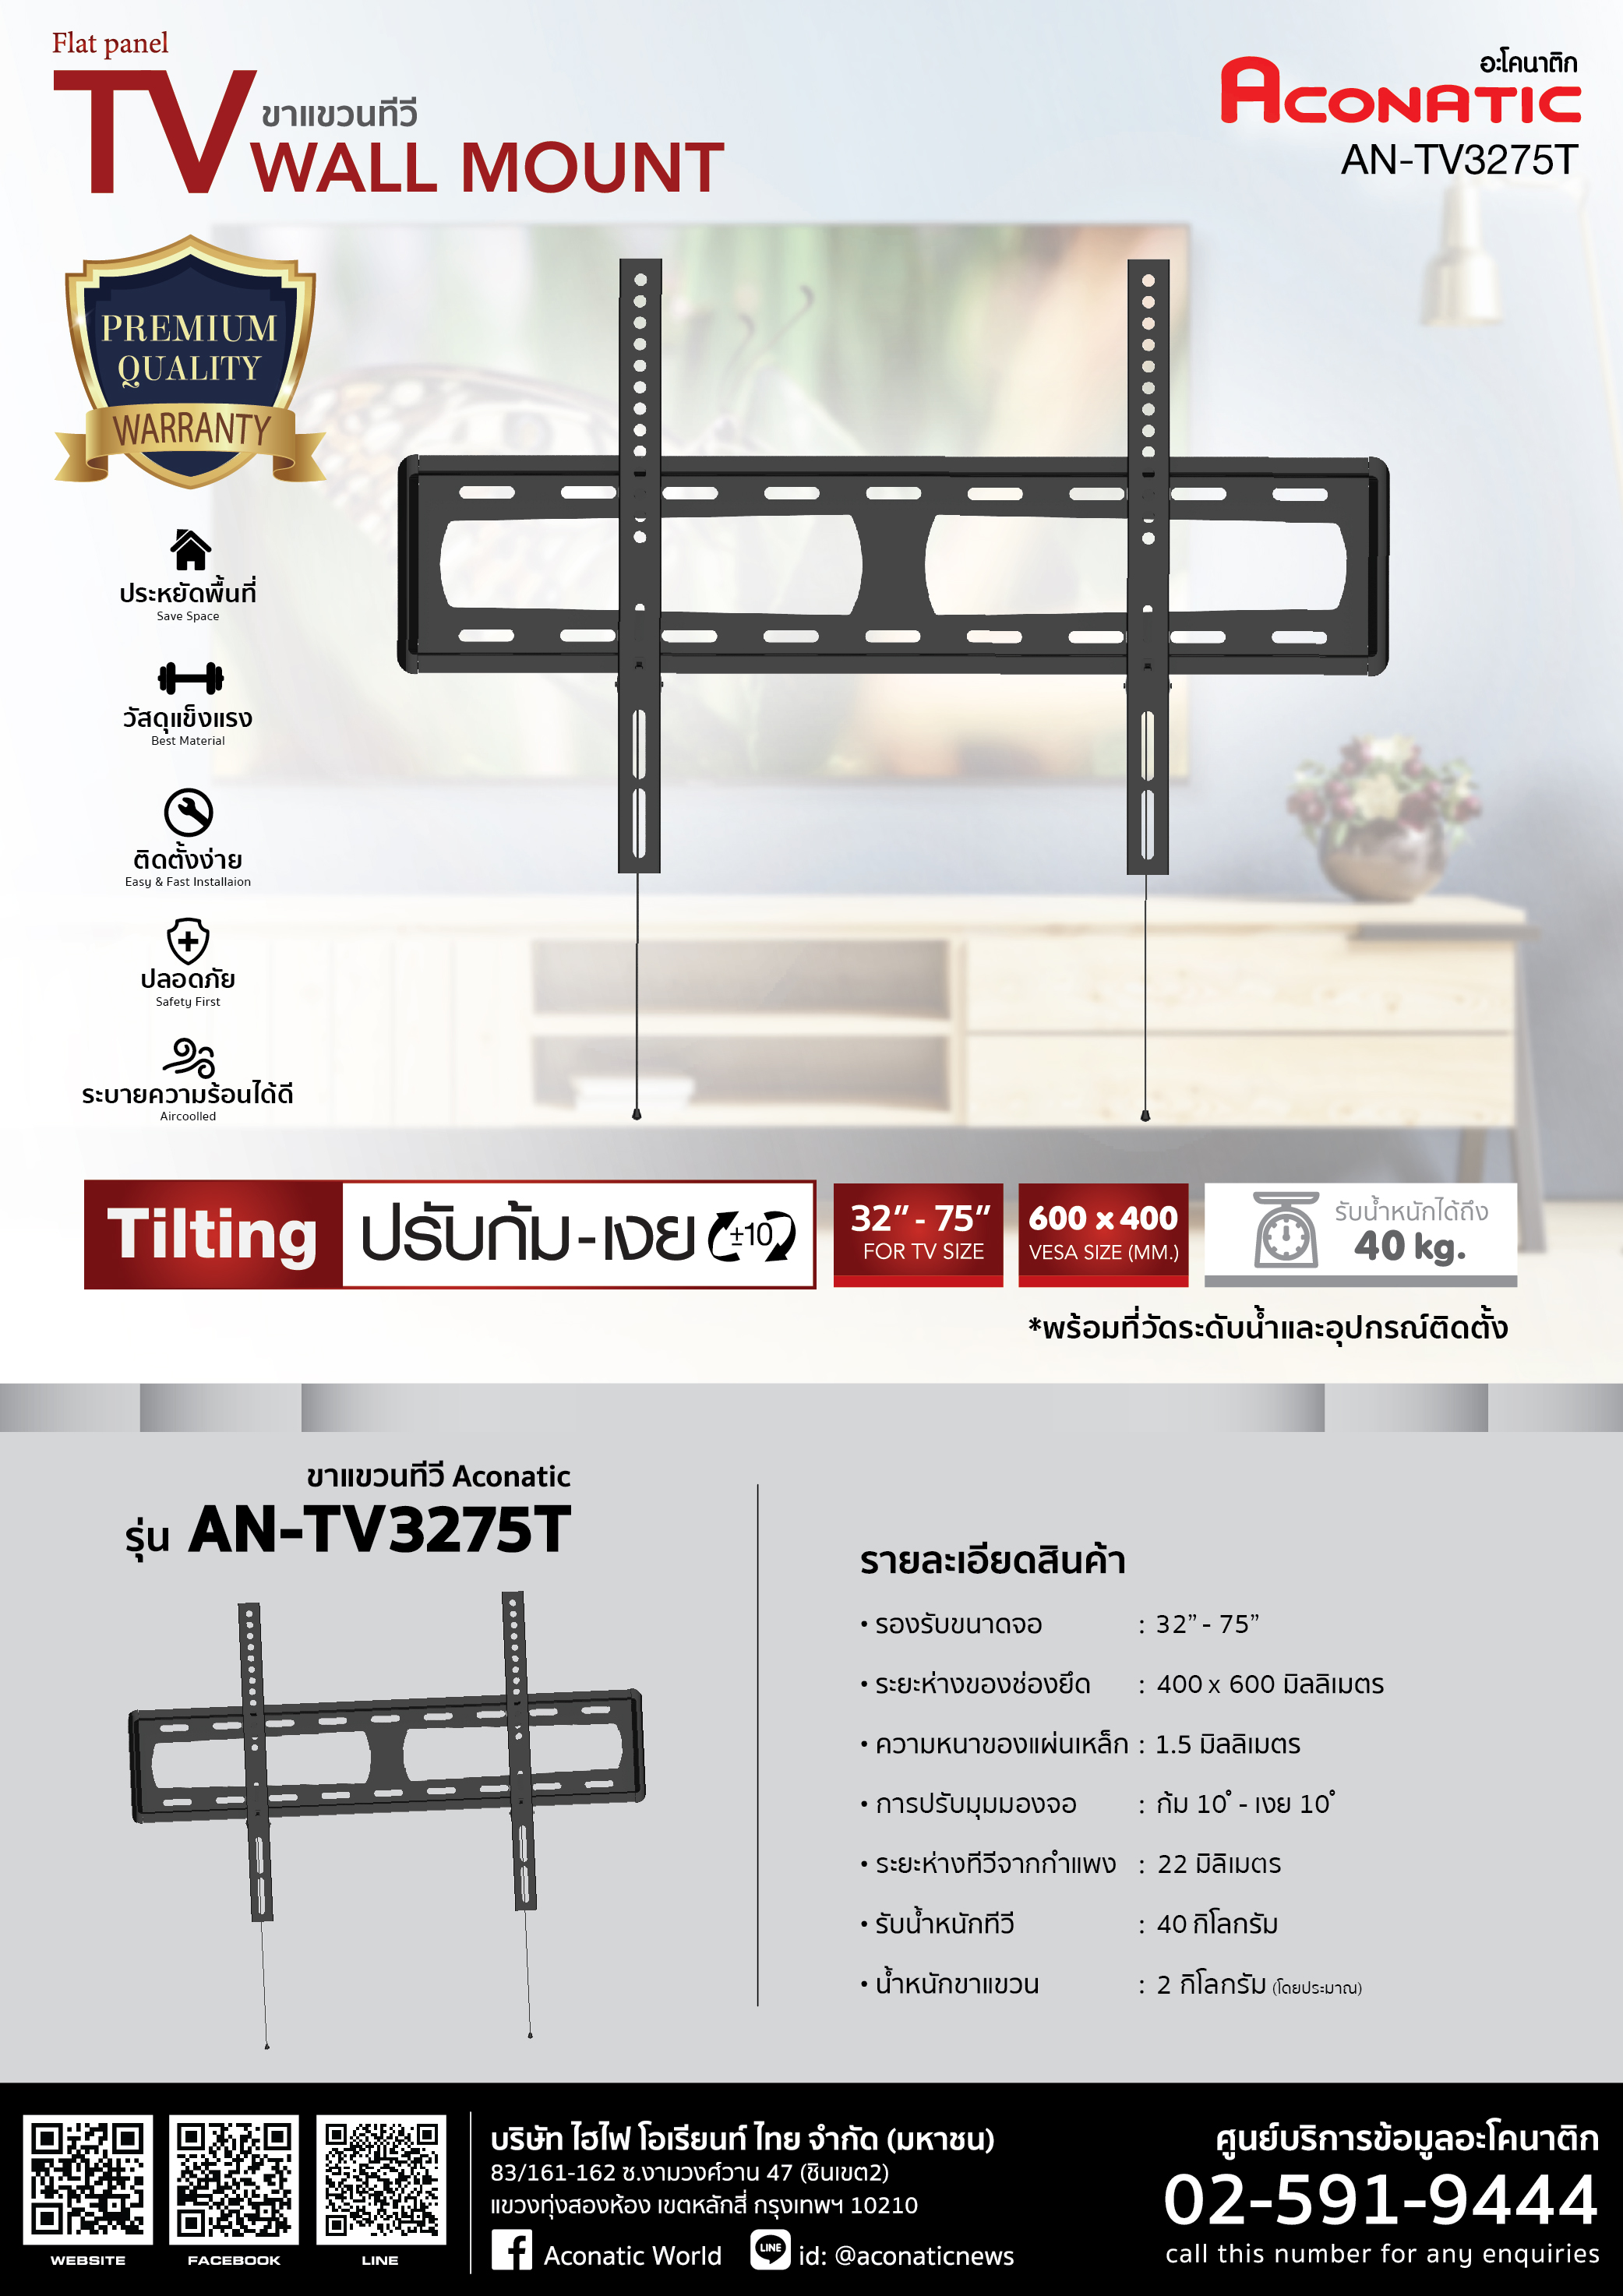 TV Wall Mount model AN-TV3275T